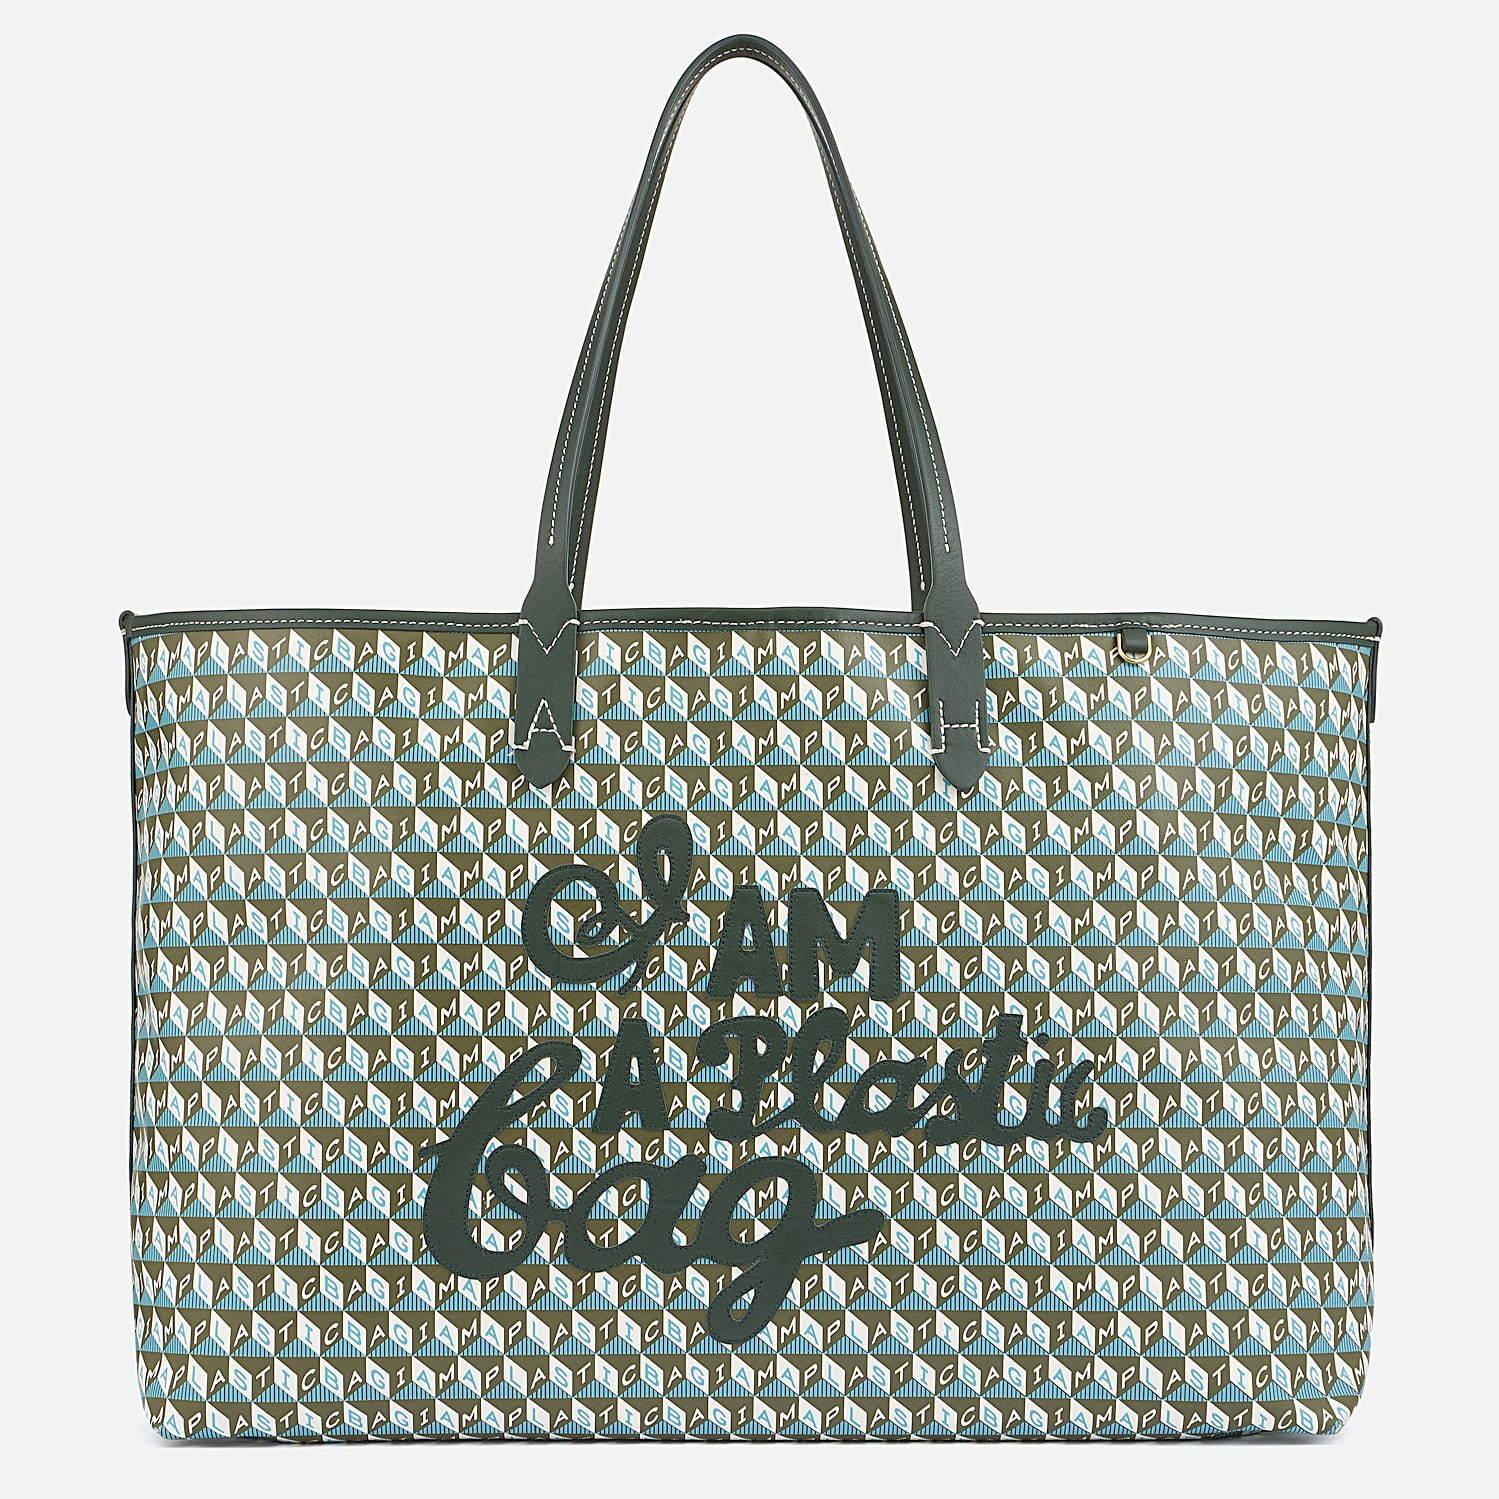 アニヤ ハインドマーチ“ペットボトル”原料の新作バッグ「I AM A Plastic Bag」発売 コピー